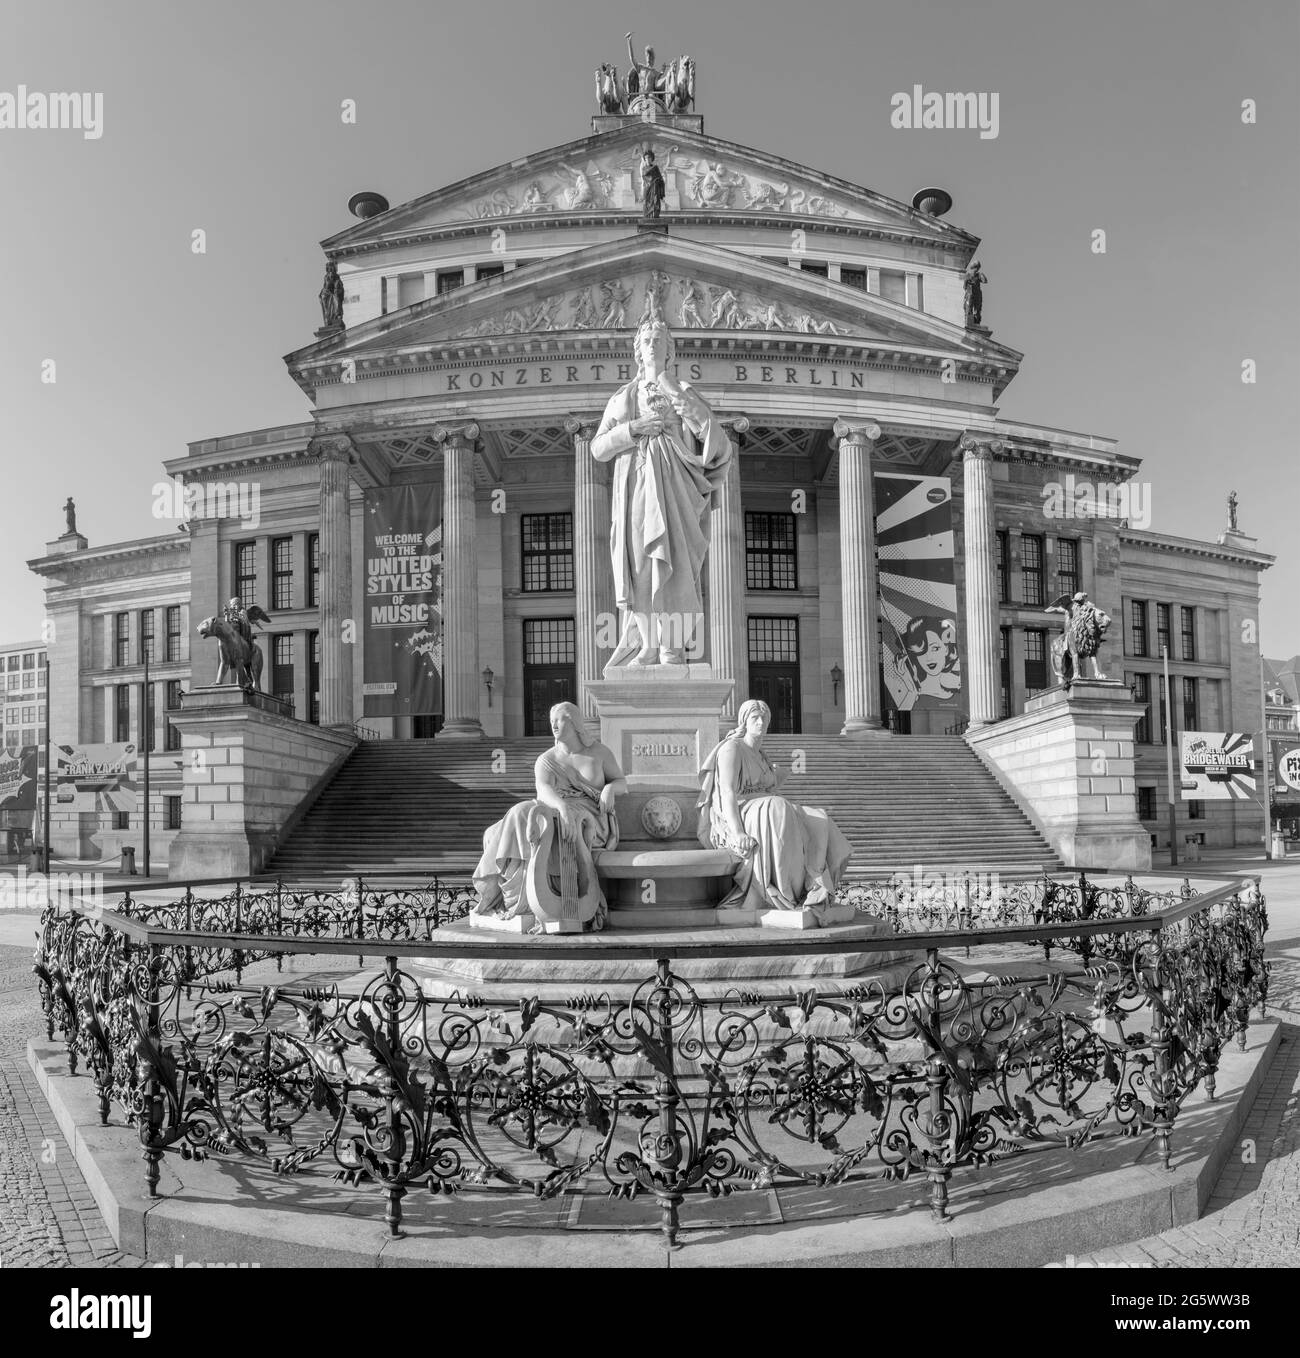 BERLIN, Deutschland, Februar - 13, 2017: The Konzerthaus Gebäude und das Denkmal von Friedrich Schiller Gendarmenmarkt Quadrat. Stockfoto